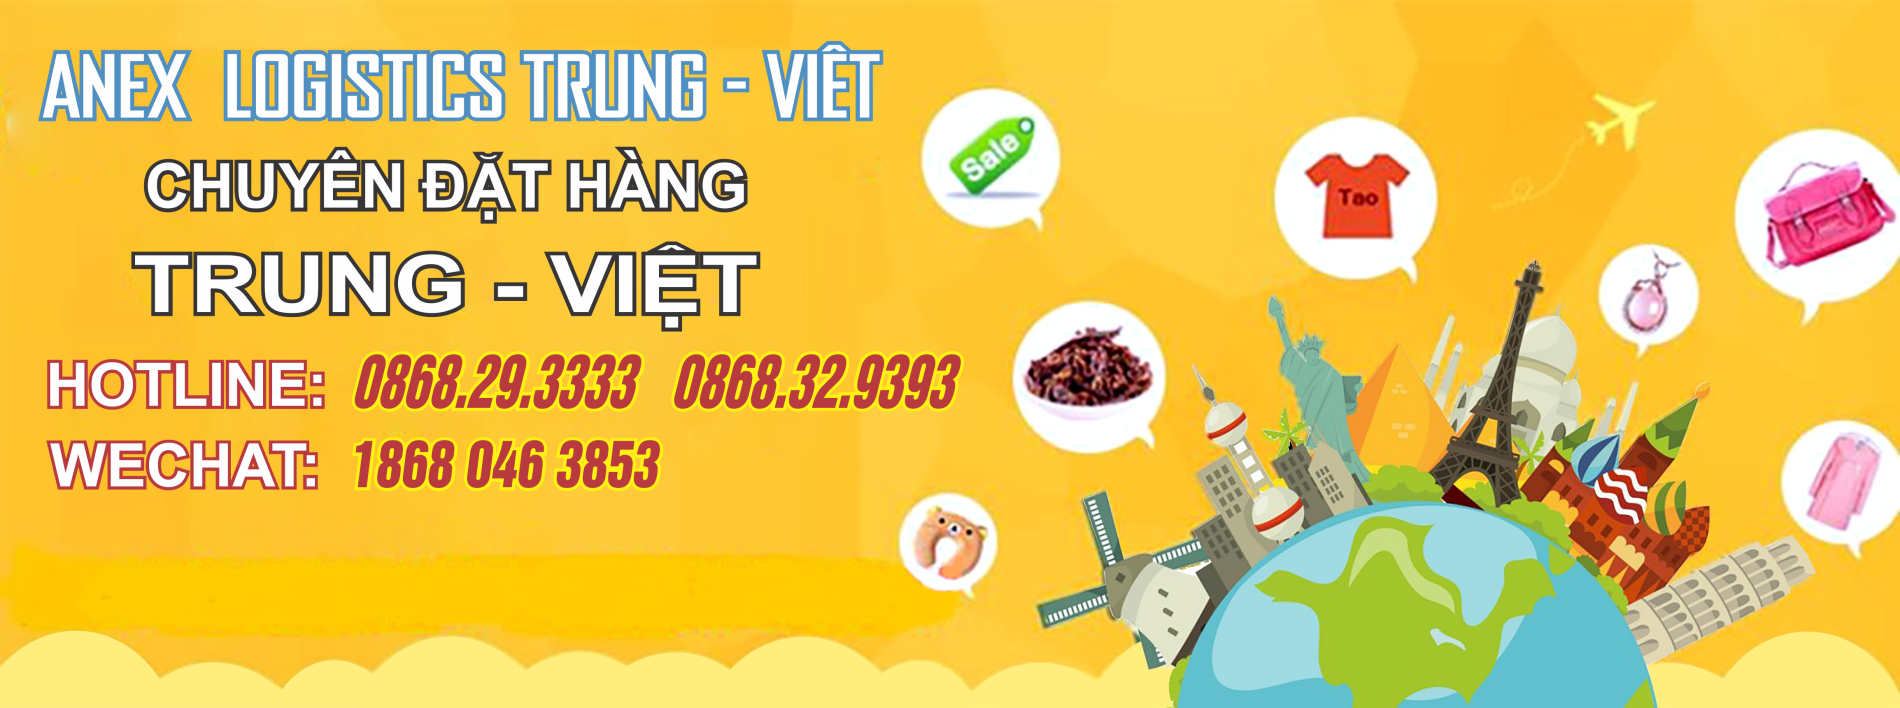 Chuyên vận chuyển hàng Trung Quốc - Việt Nam